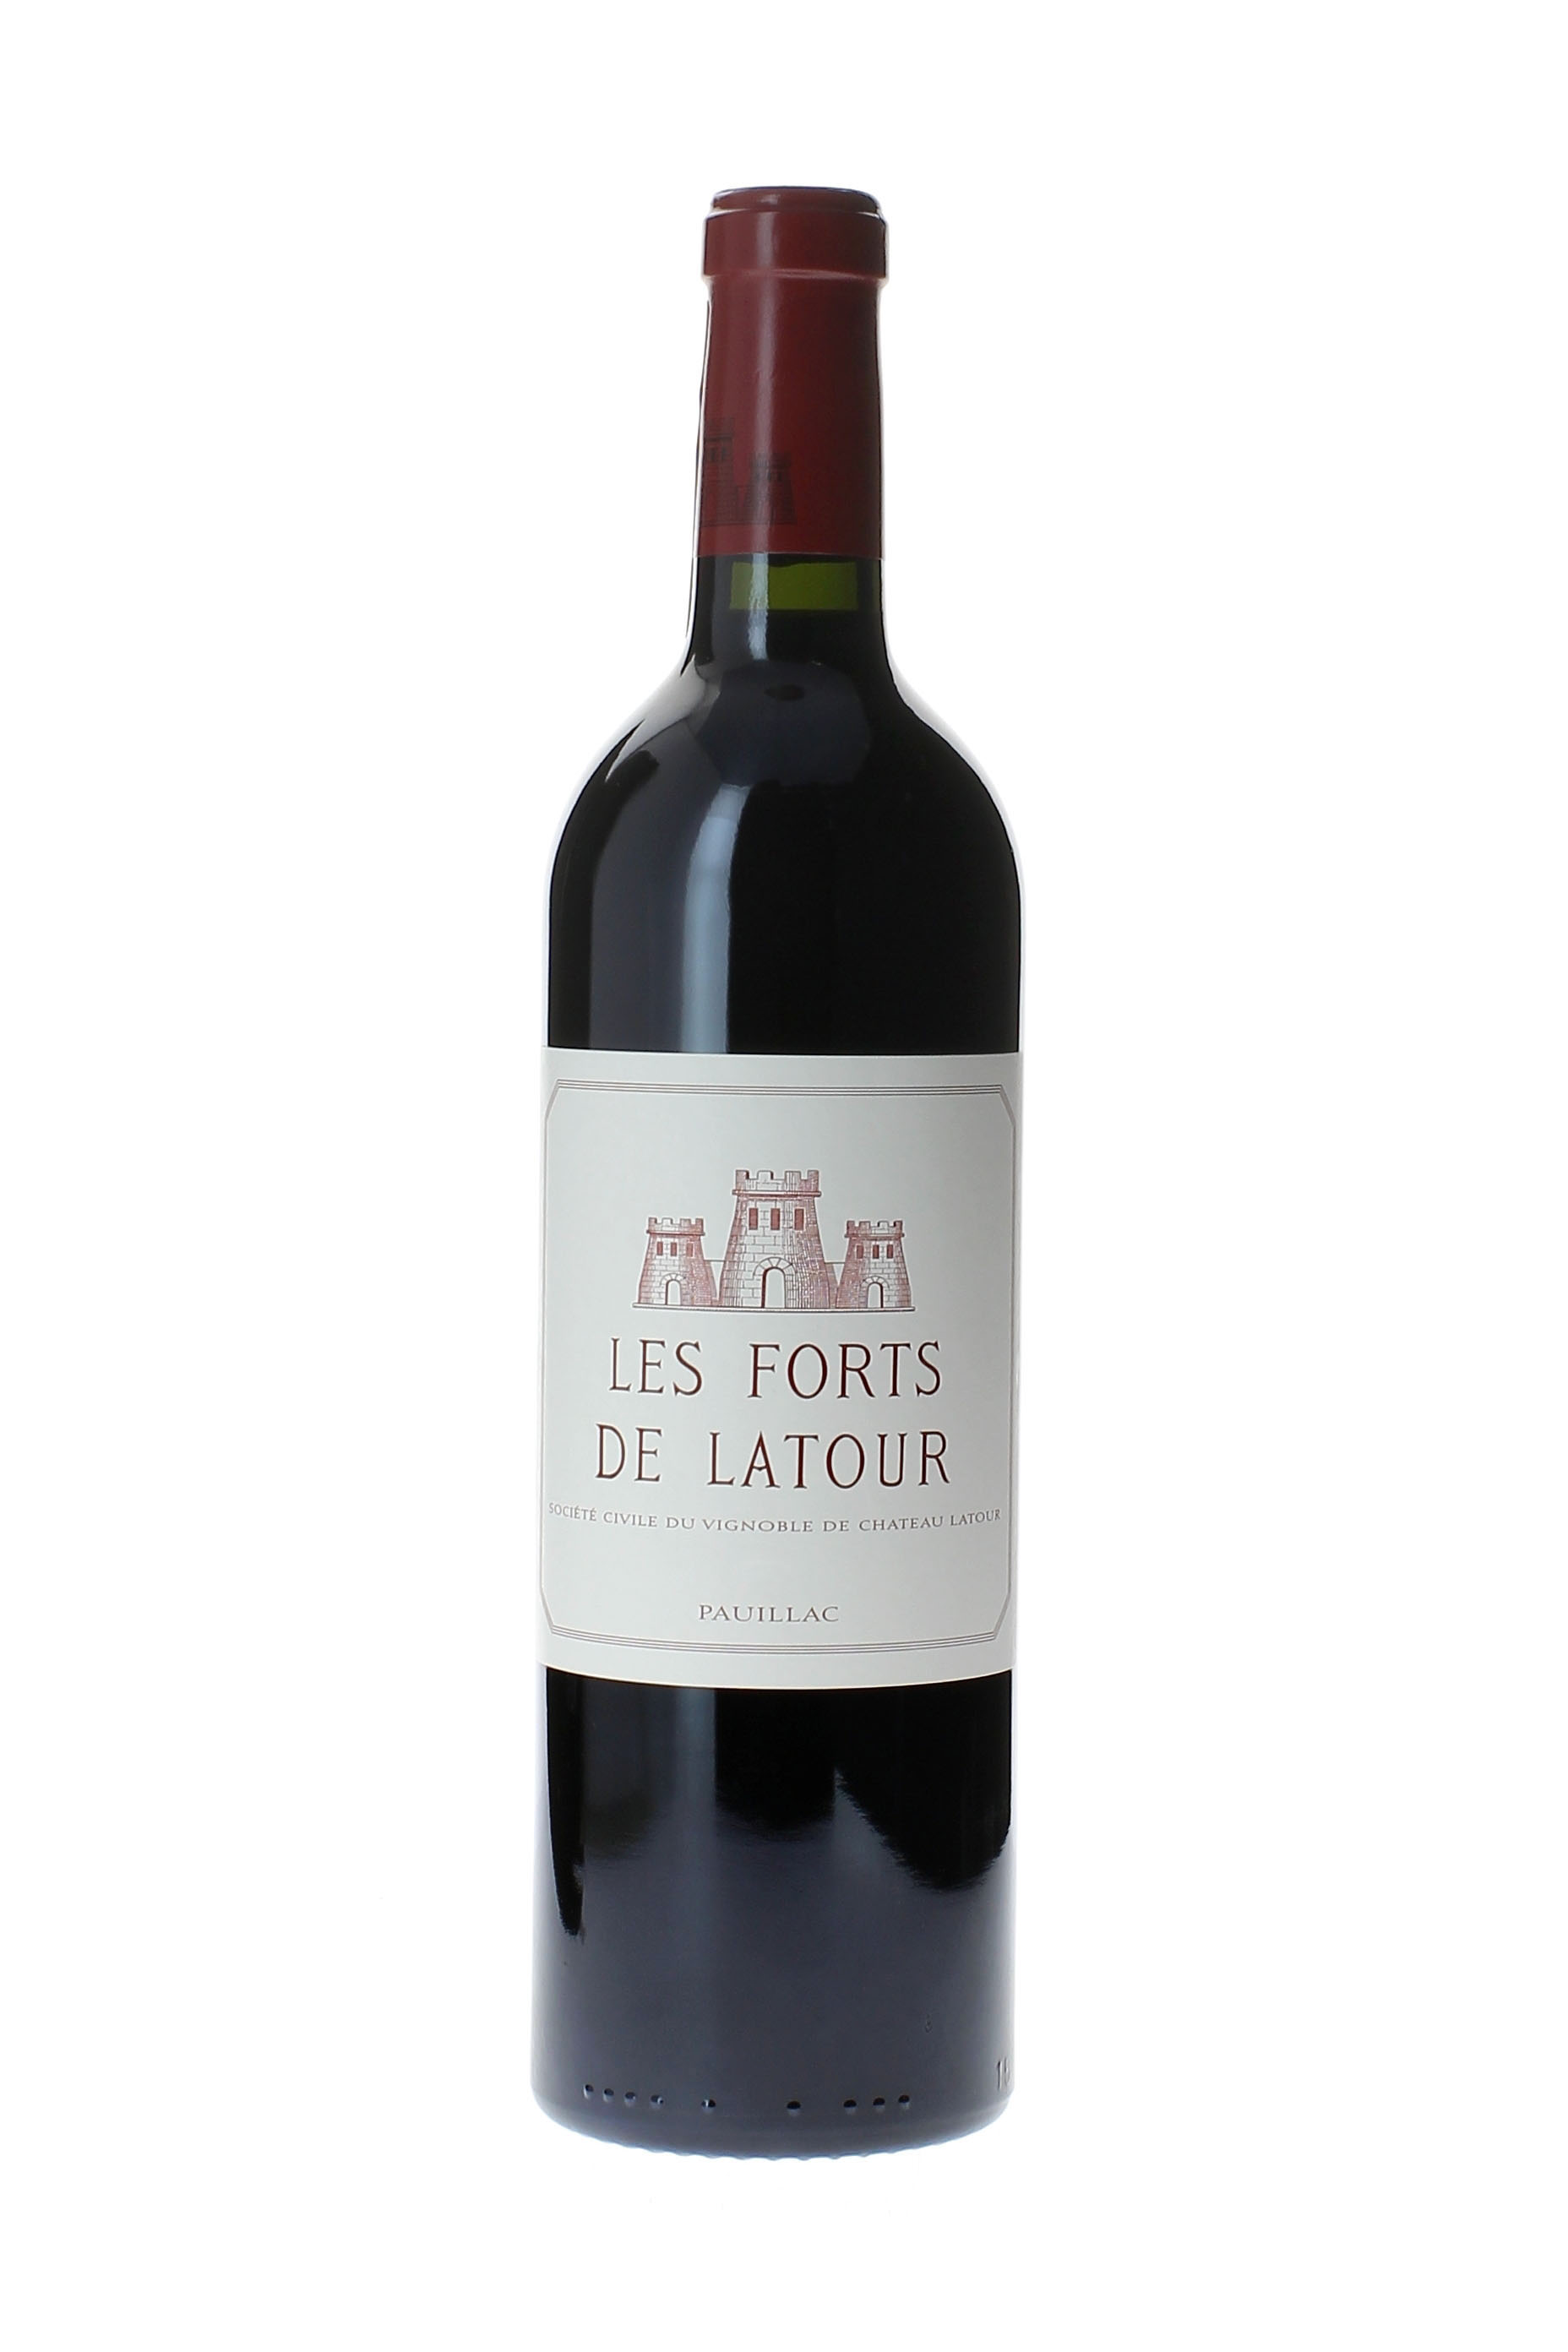 Forts de latour 1996 2me vin de LATOUR Pauillac, Bordeaux rouge